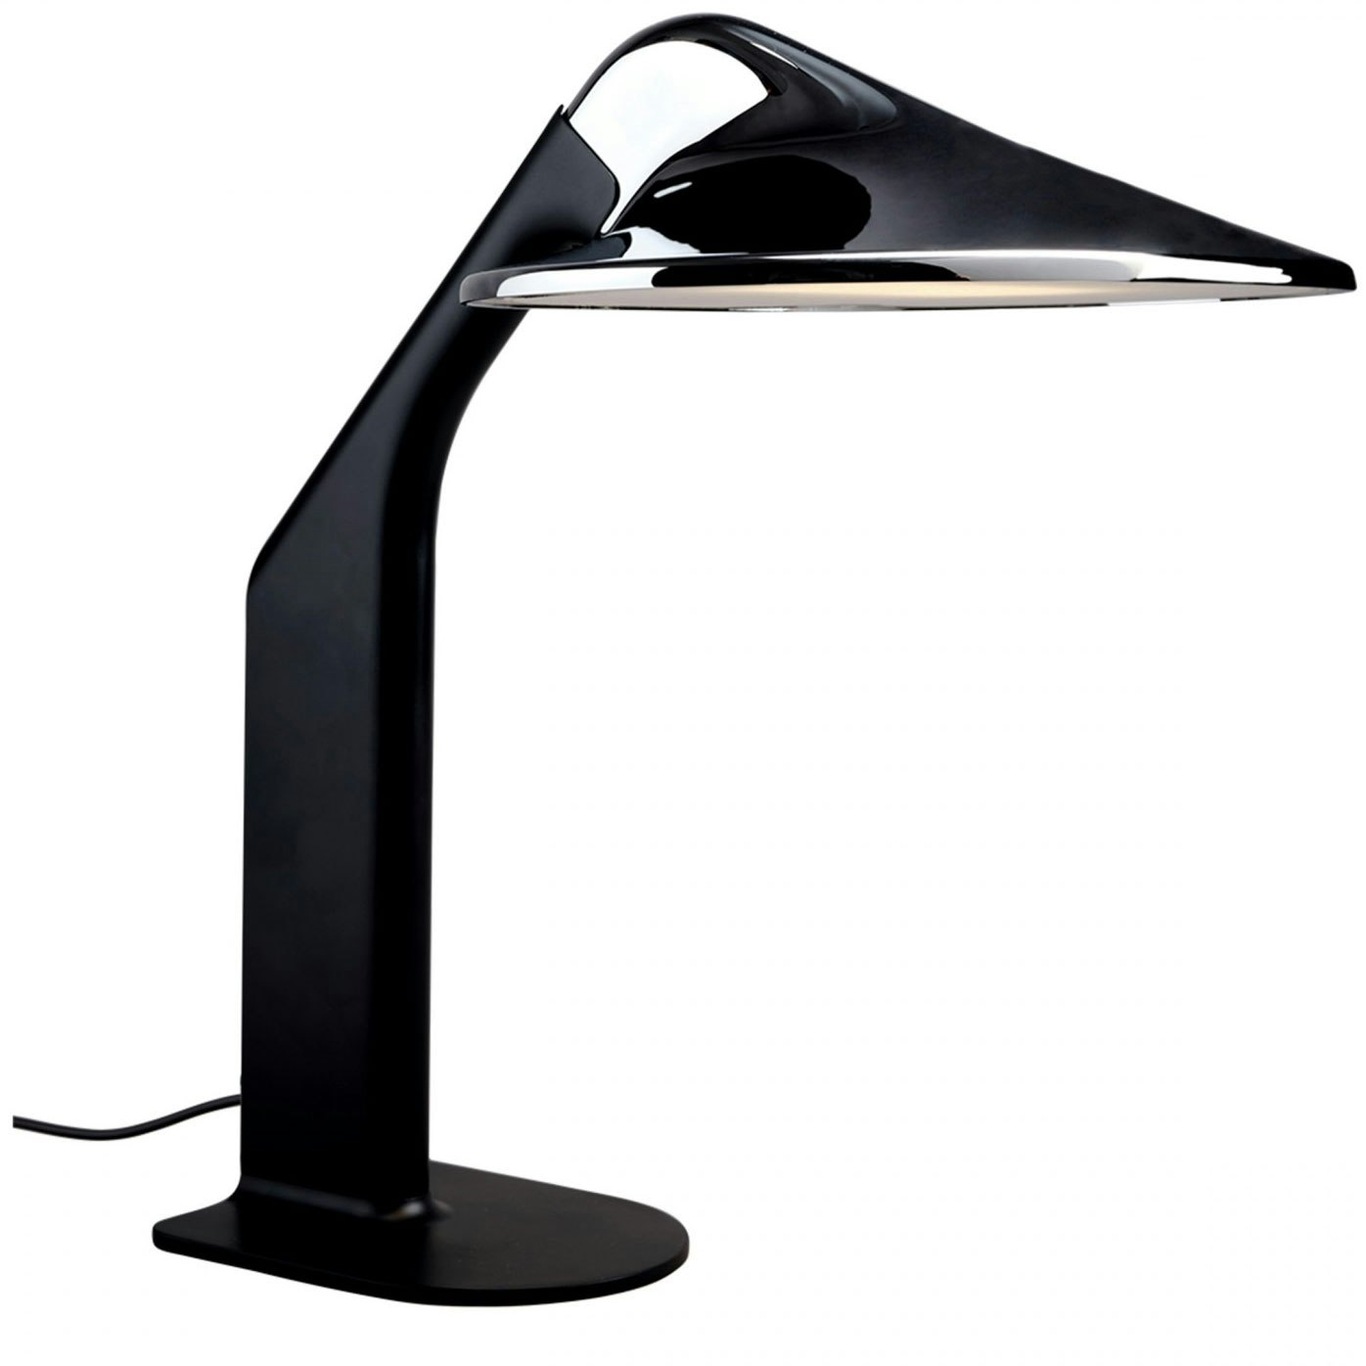 Niwaki Table Lamp, Black / Chrome